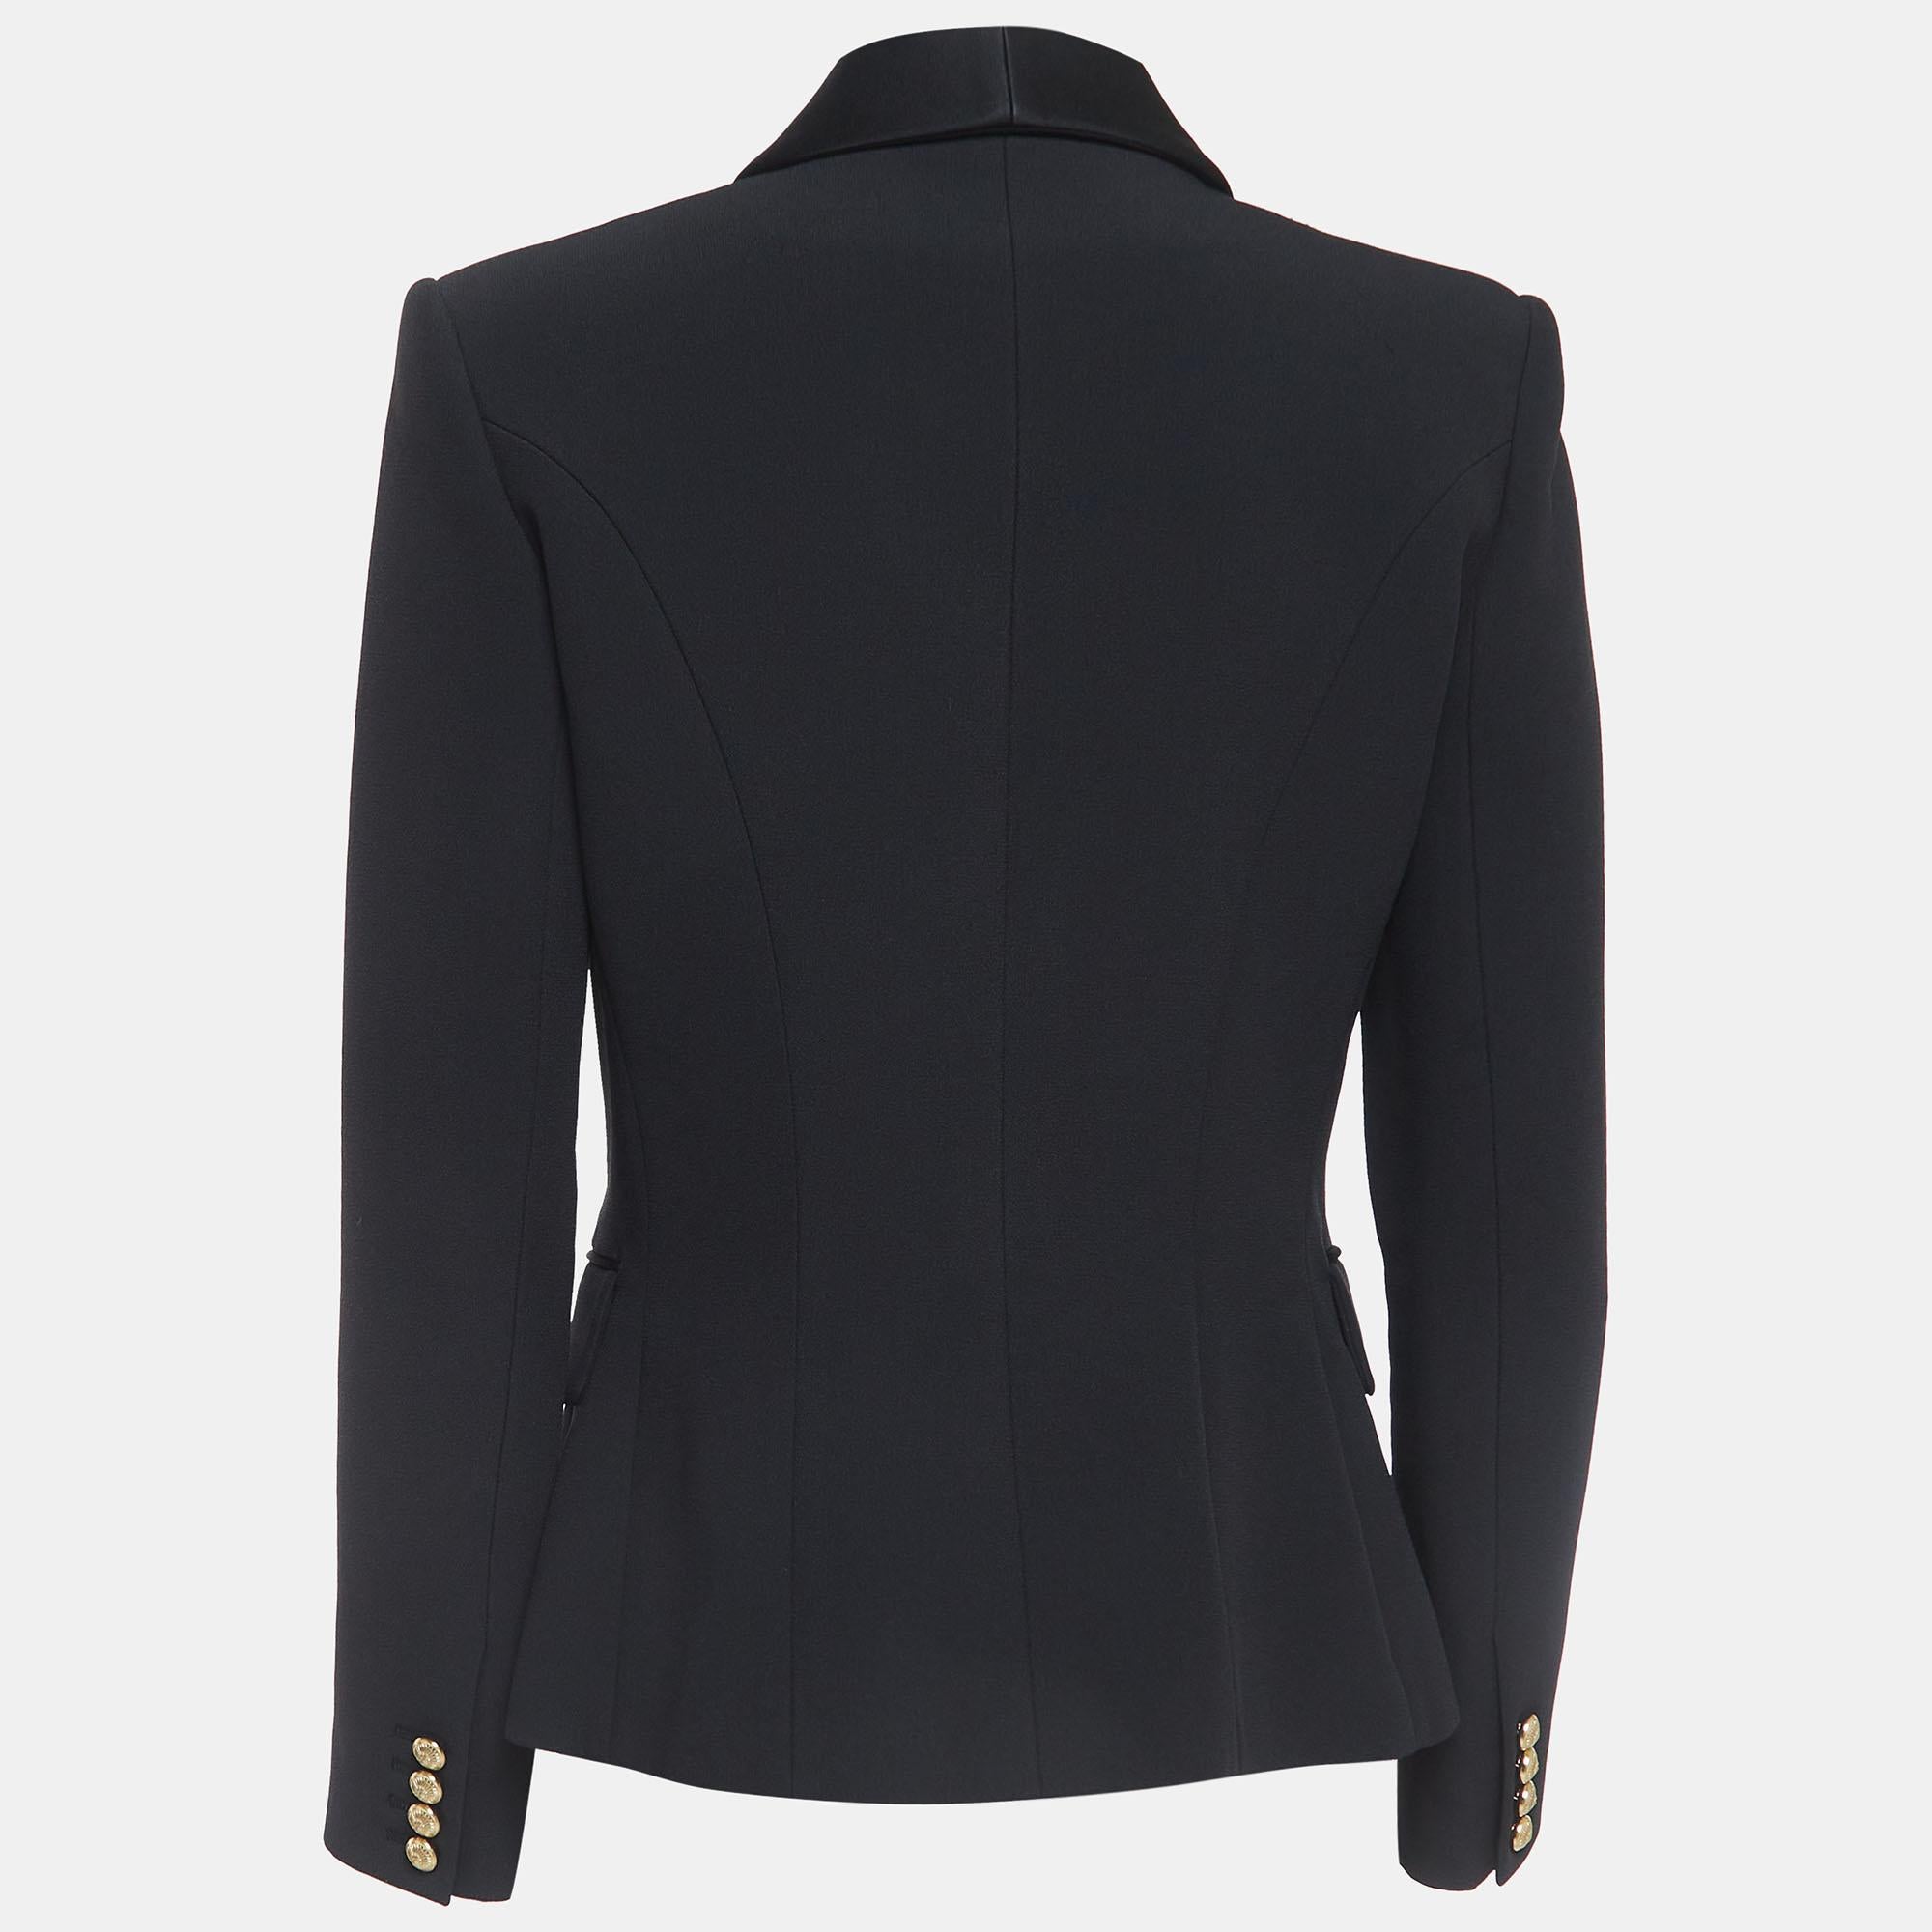 Ce blazer vous apporte à la fois classe et luxe lorsque vous le portez. Il est souligné par des manches longues et des détails classiques, ce qui lui confère une finition polie et formelle.

